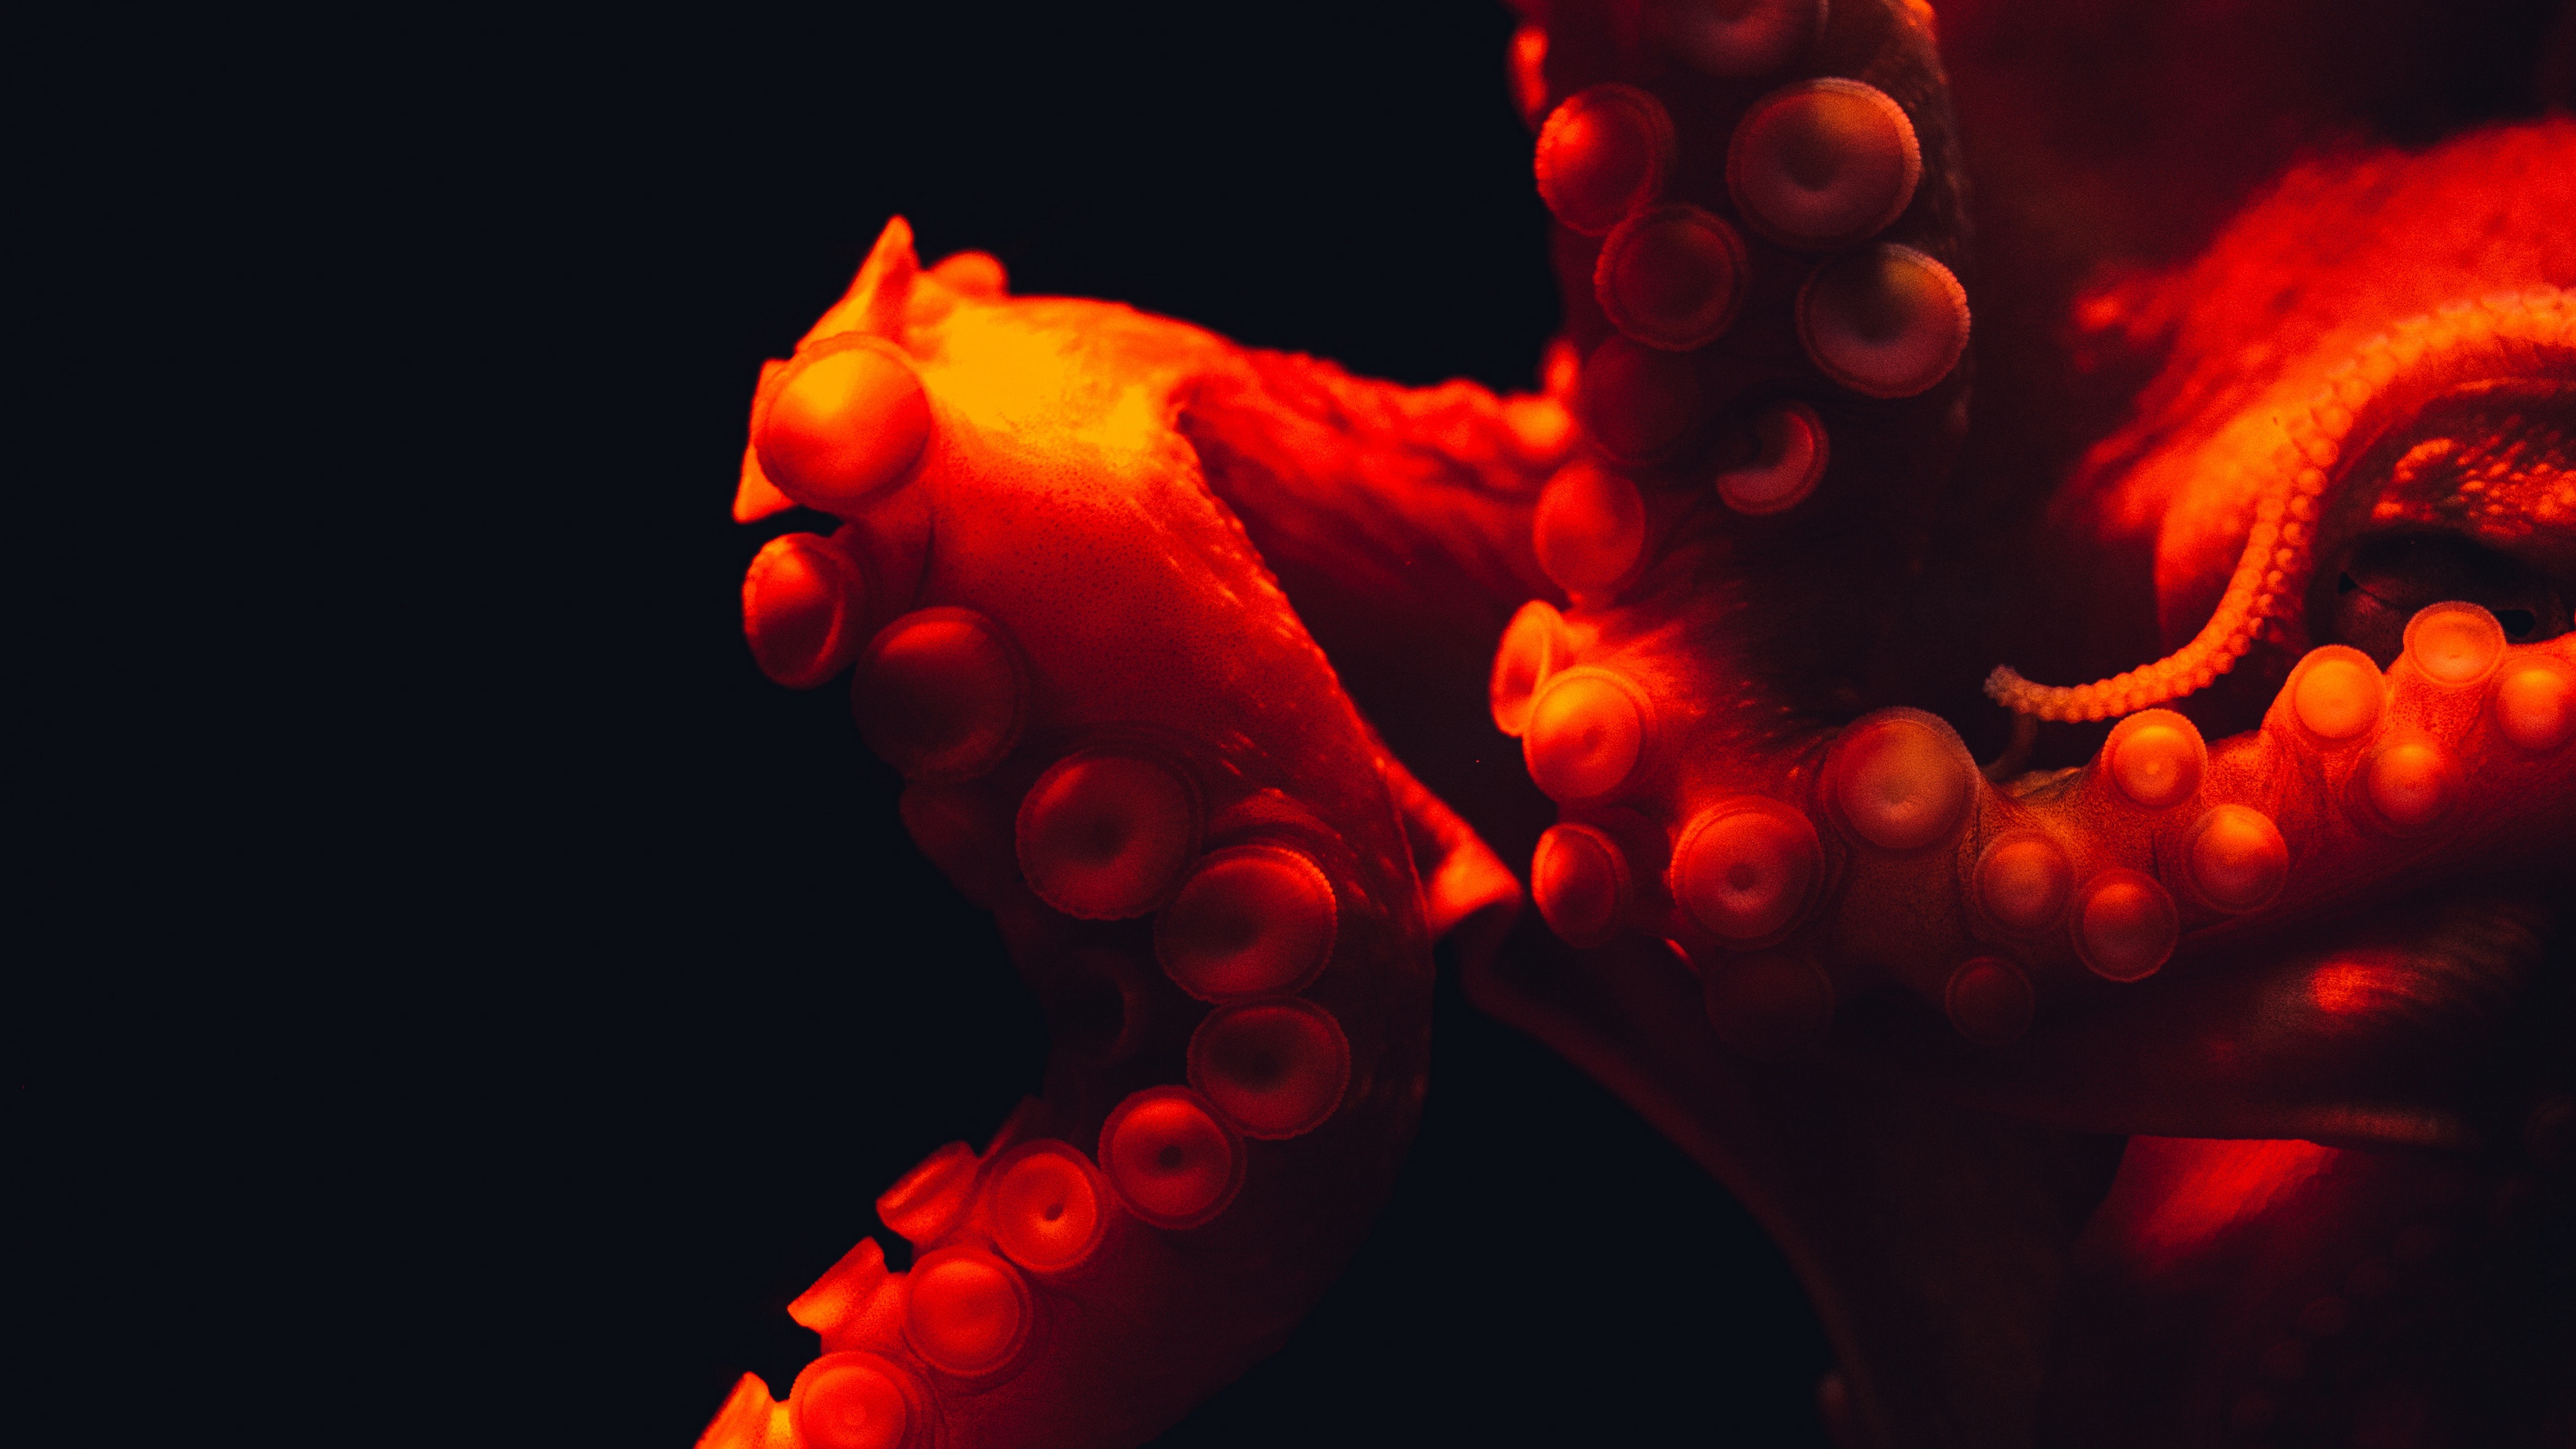 octopus tentacles red underwater world 4k 1540575384 - octopus, tentacles, red, underwater world 4k - tentacles, red, octopus